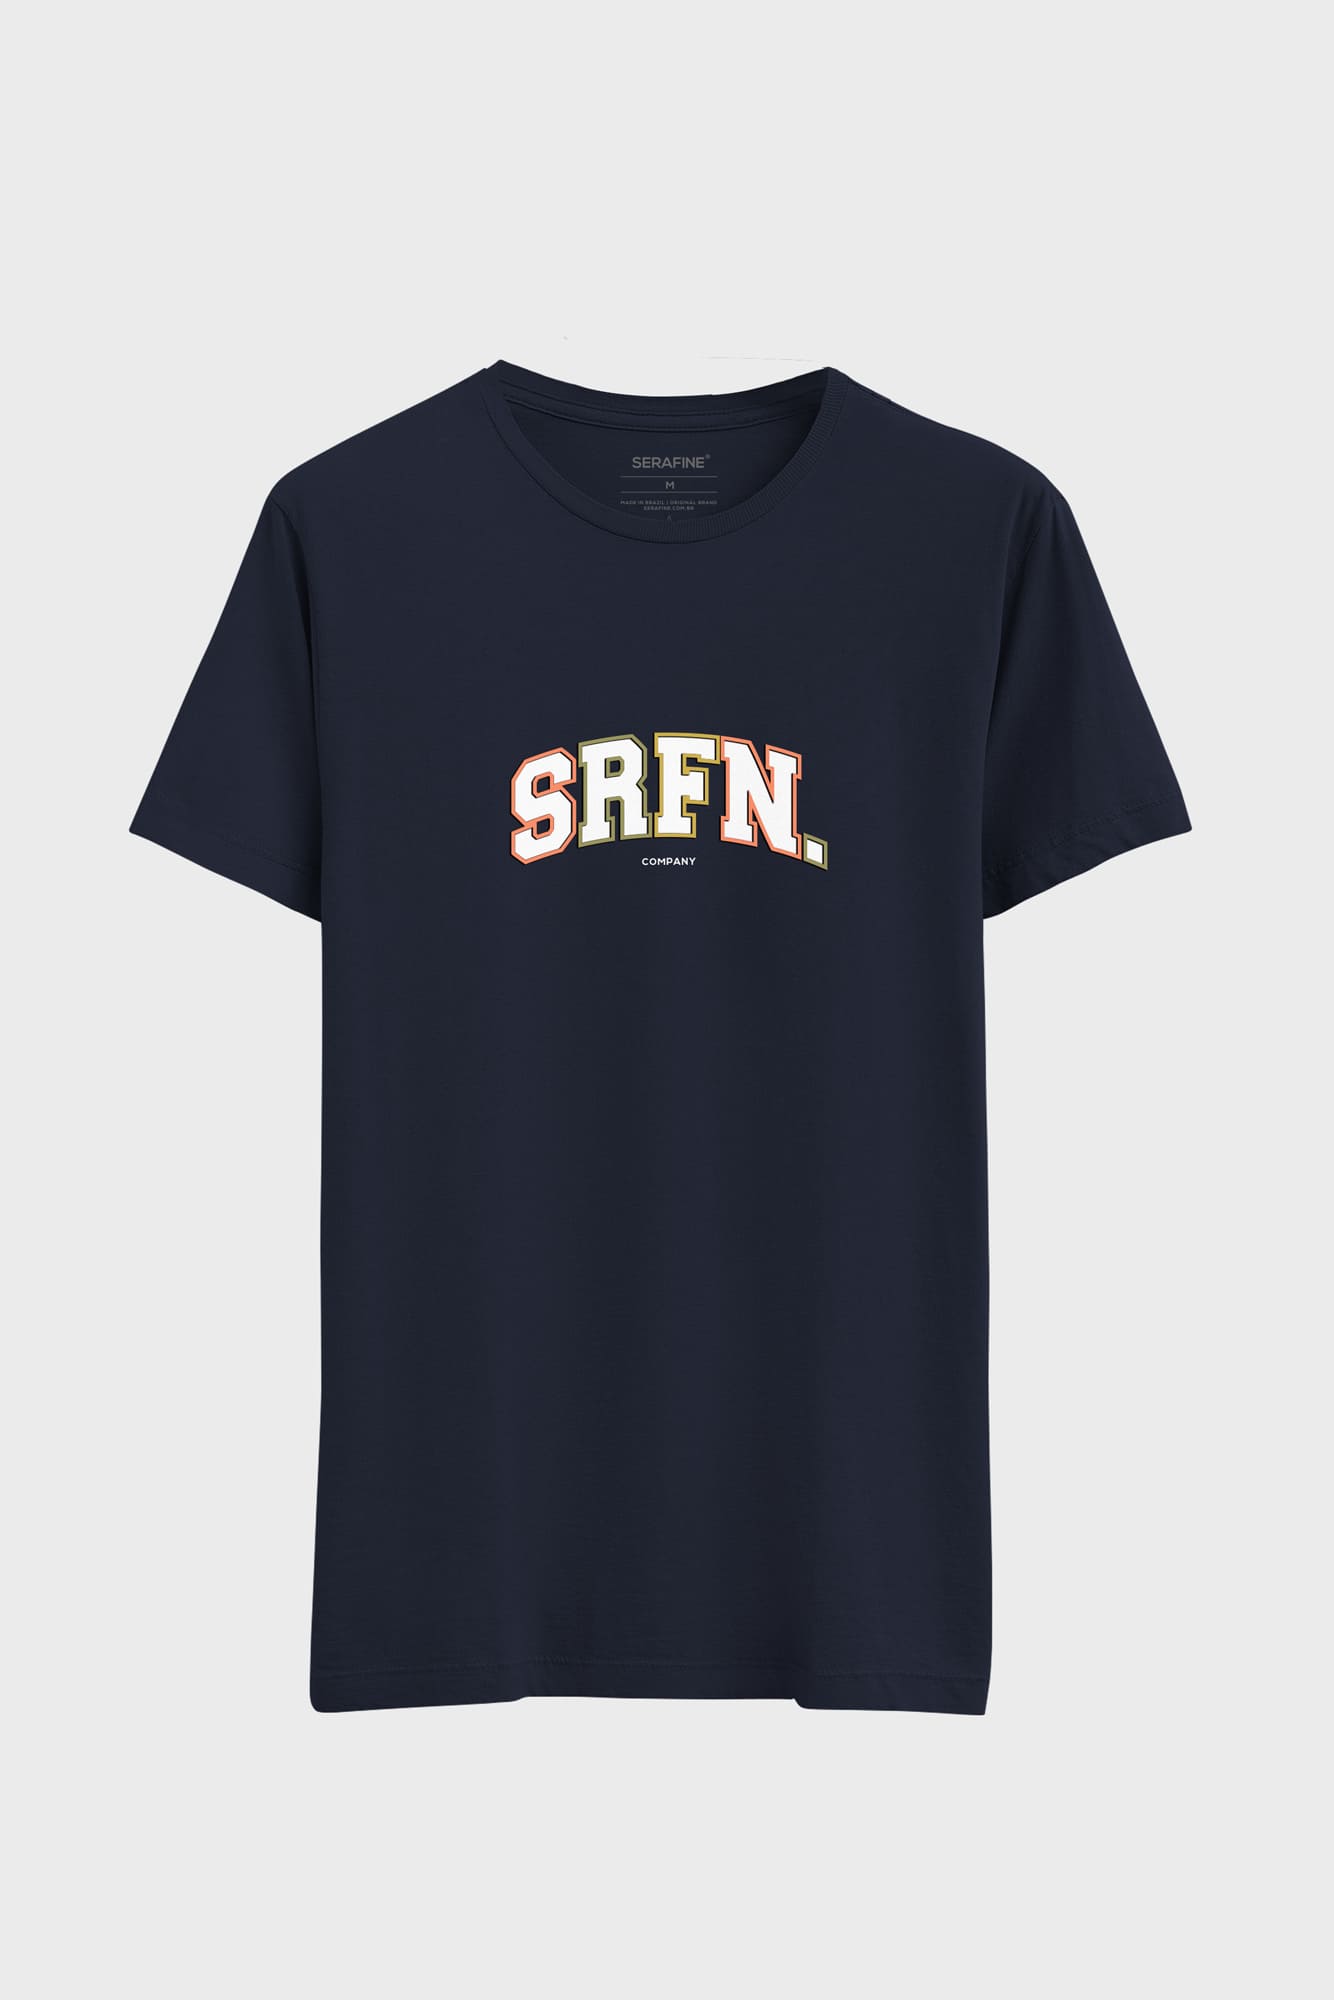 Camiseta Serafine School- S24TC540